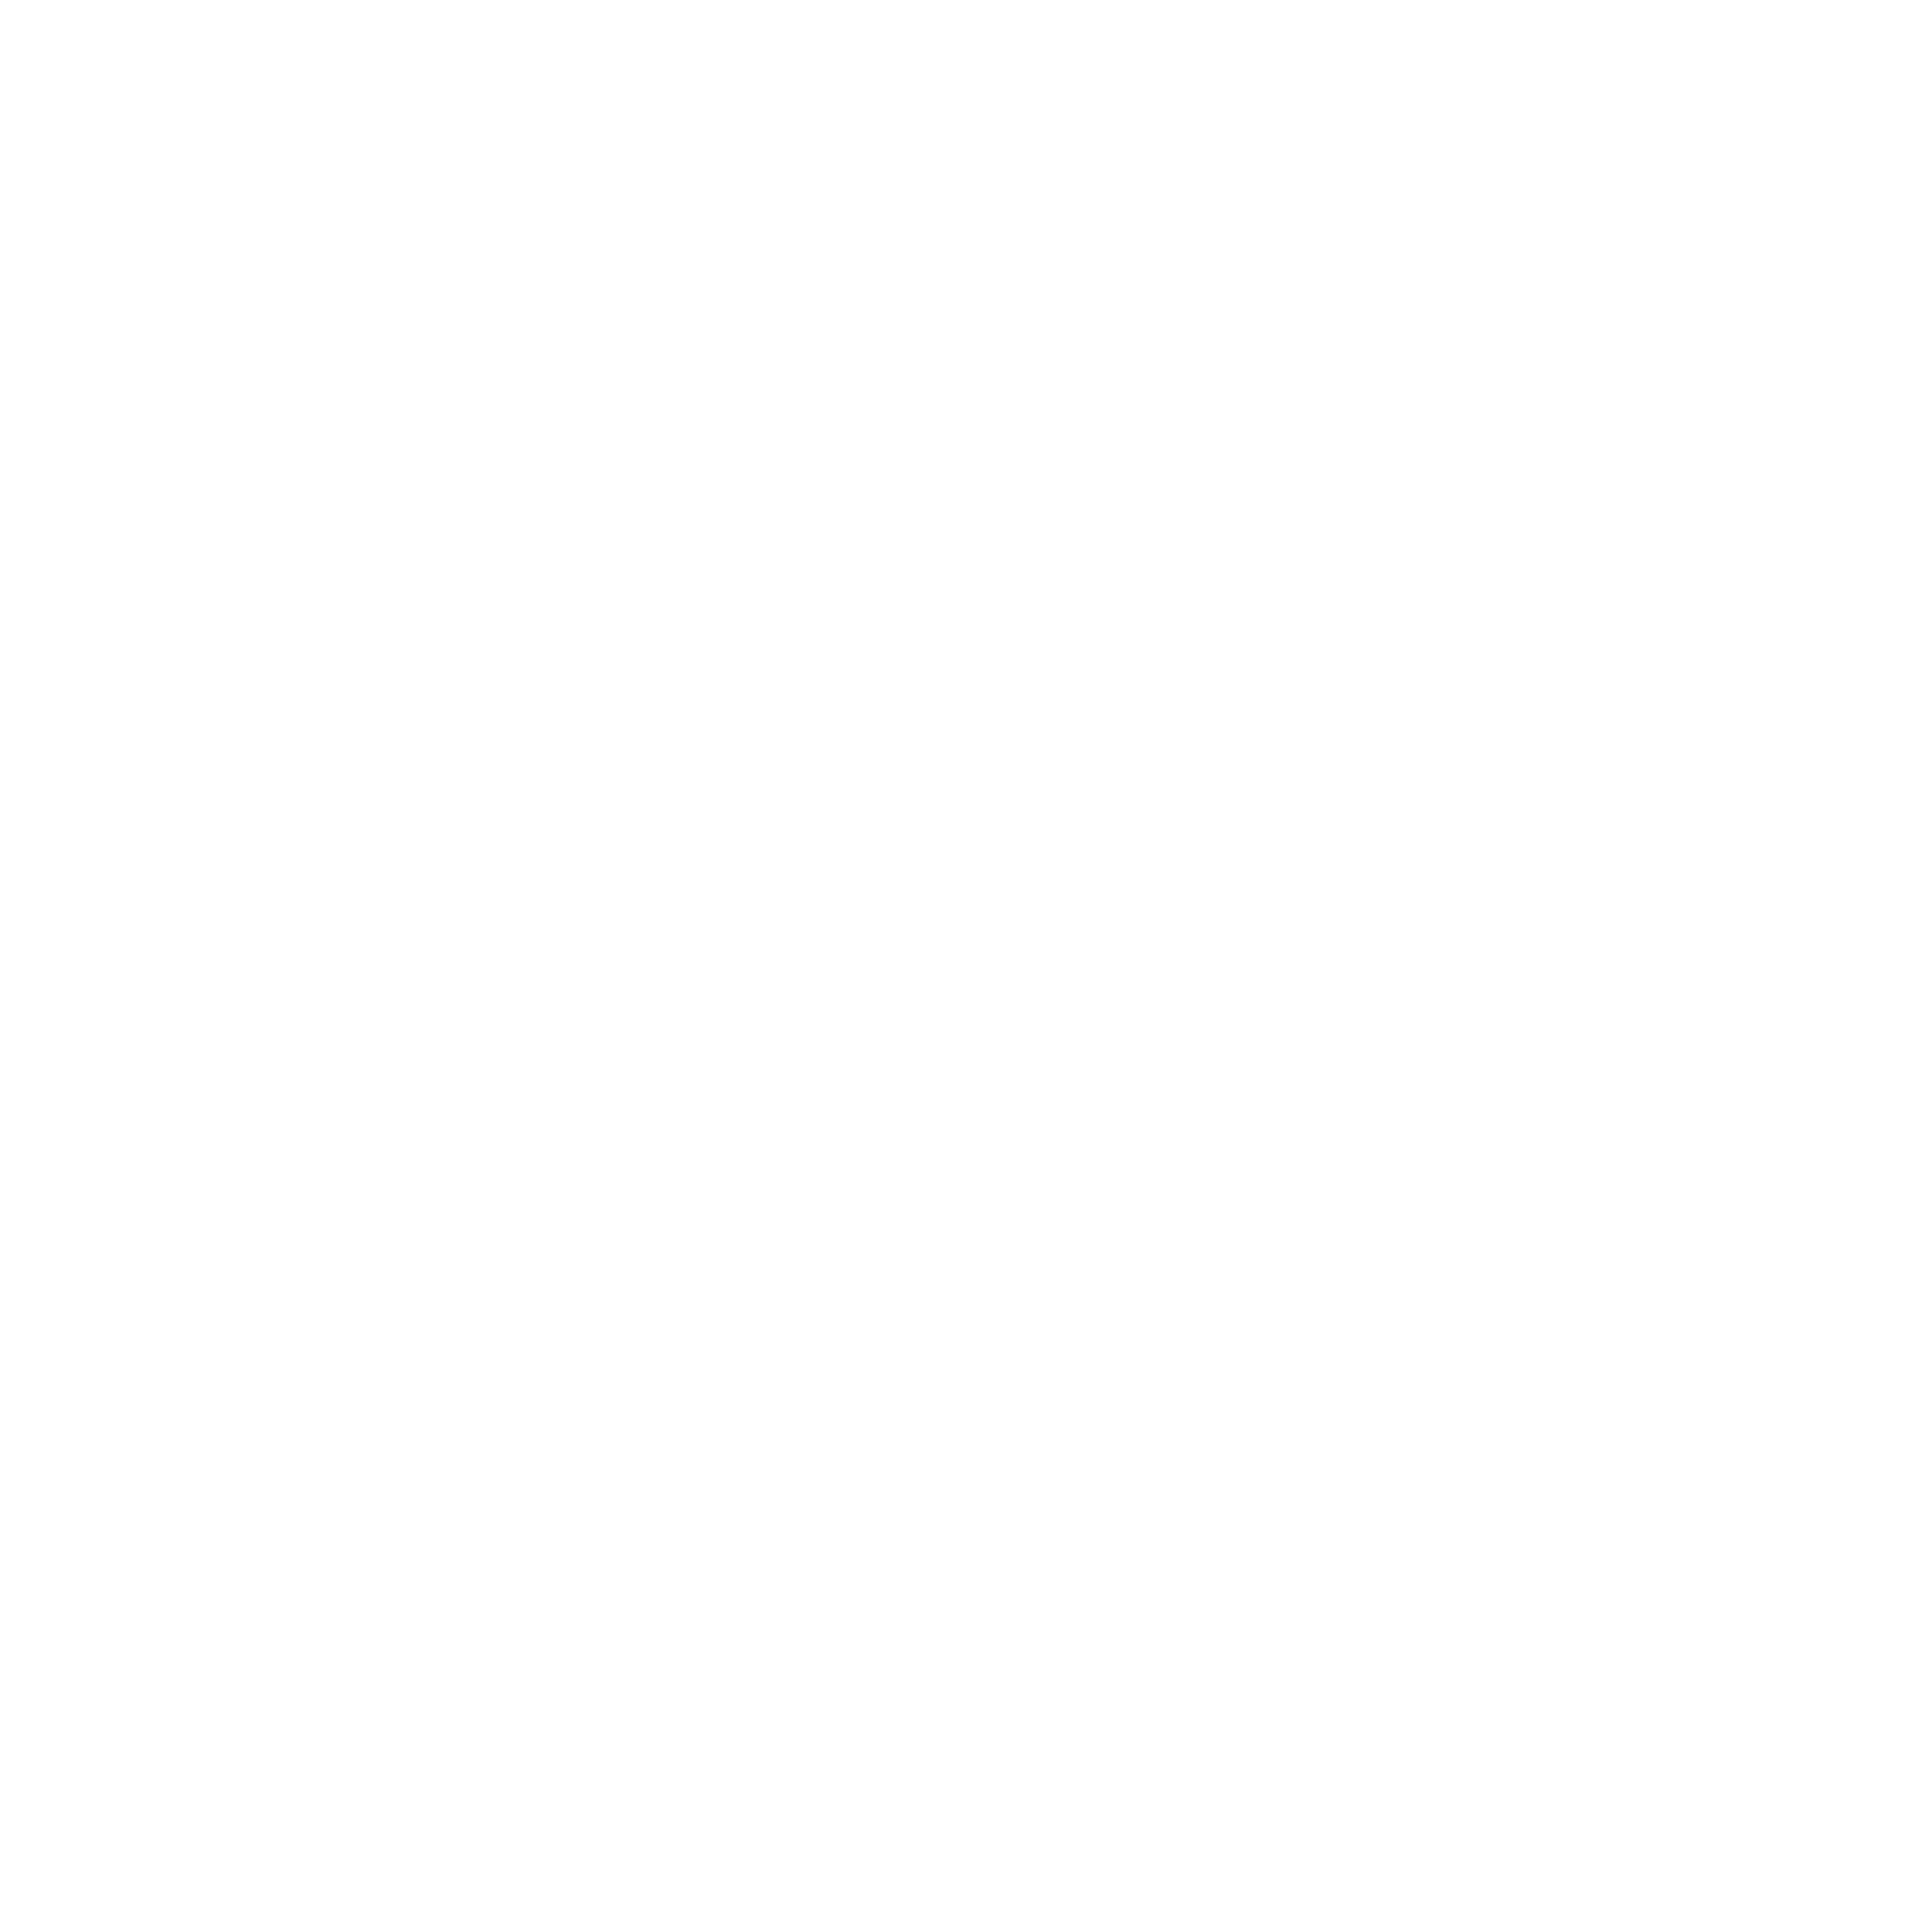 Favicon_Fabbrica_Pedavena_Verona_Birra